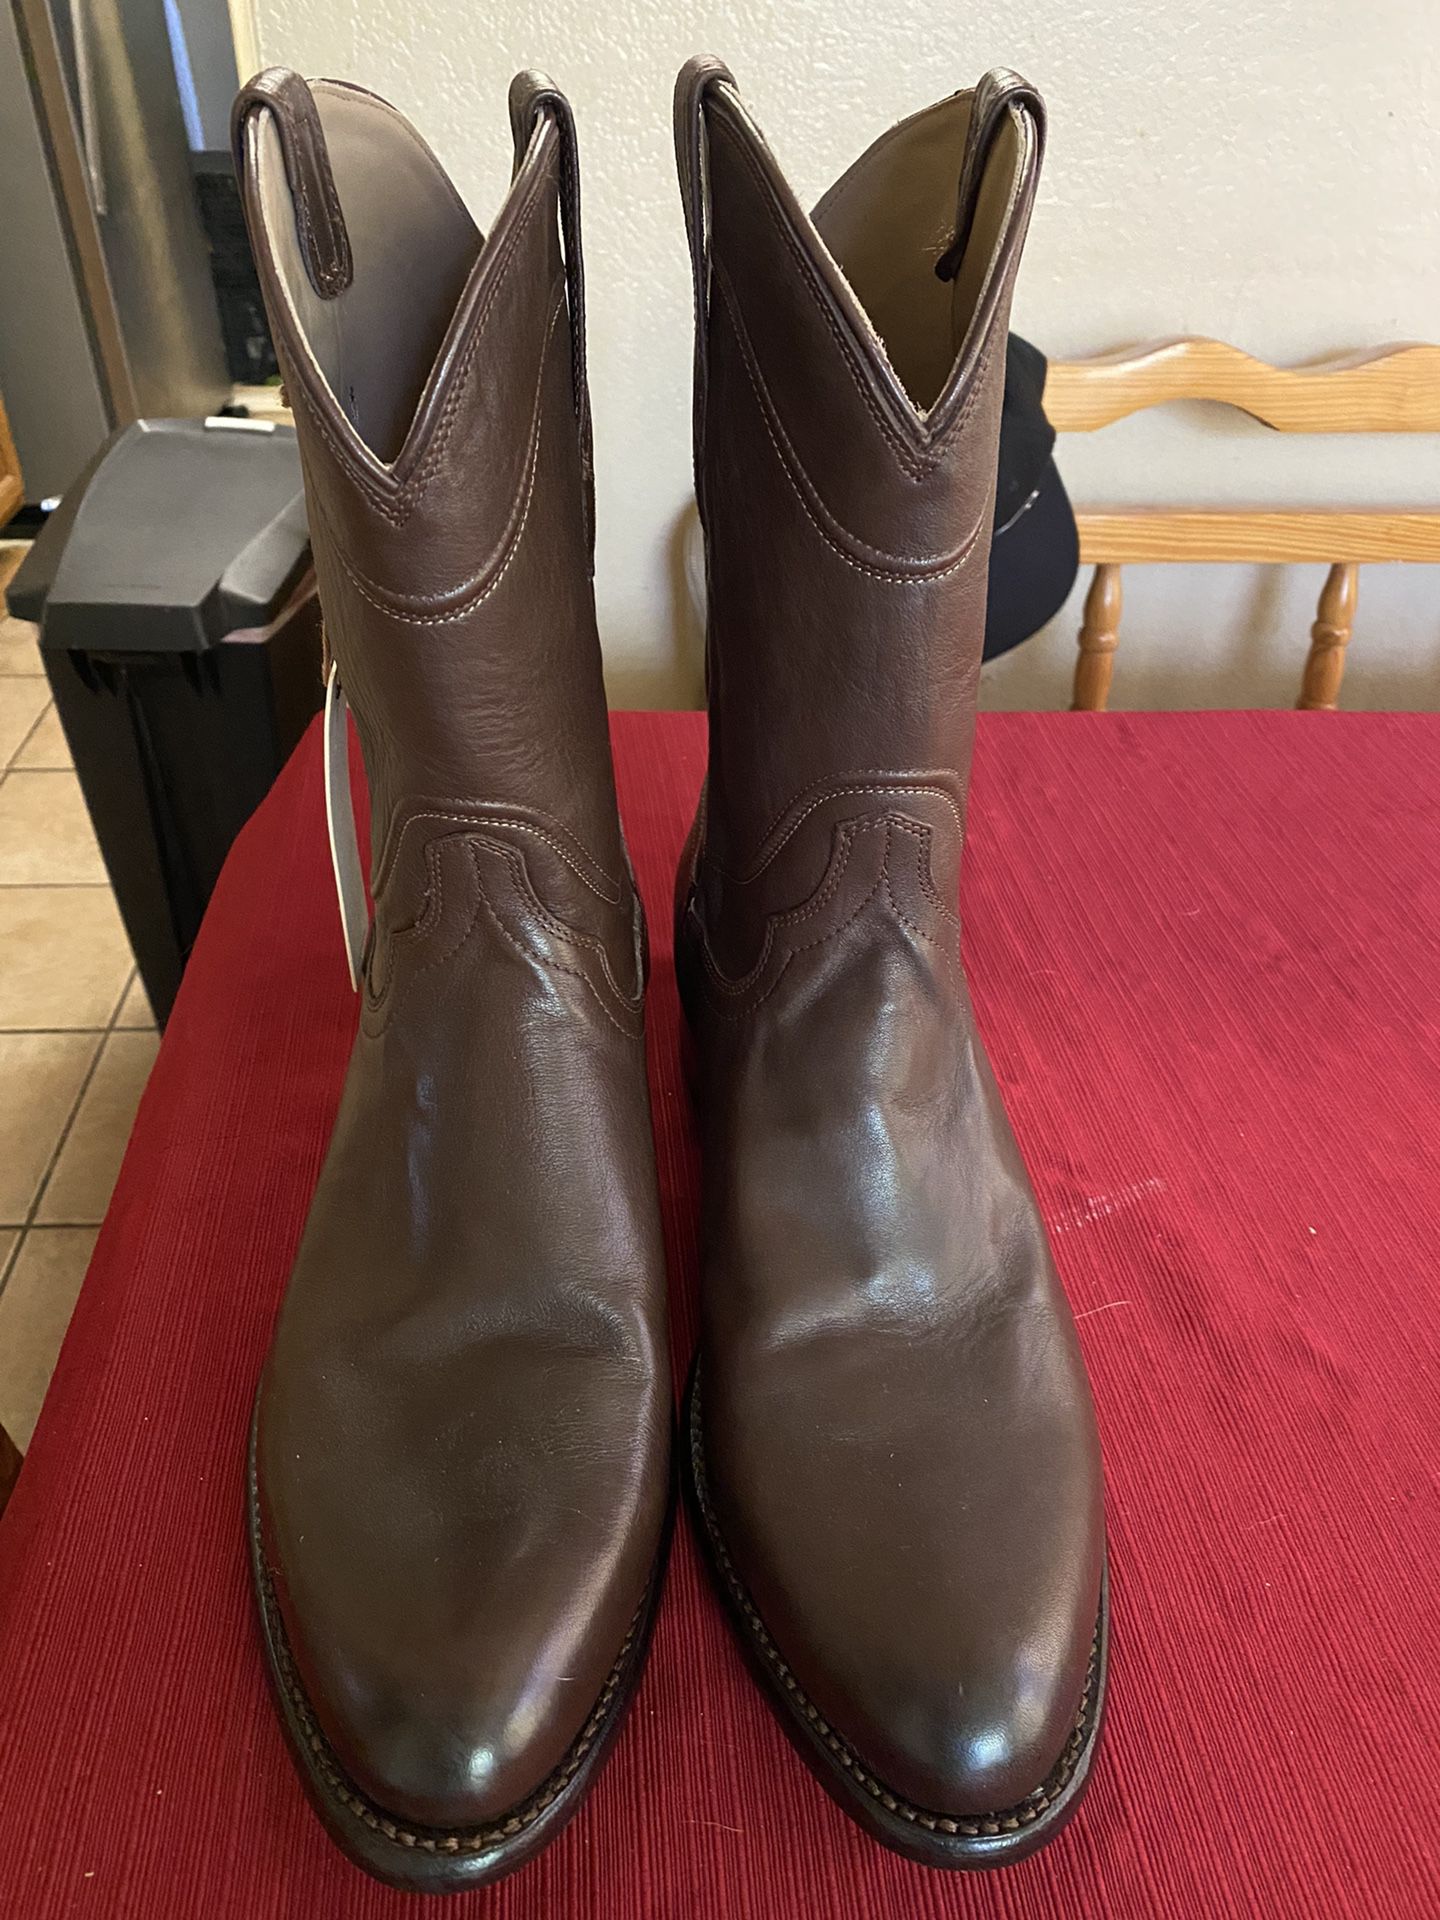 New Tacovas Men’s Boots 